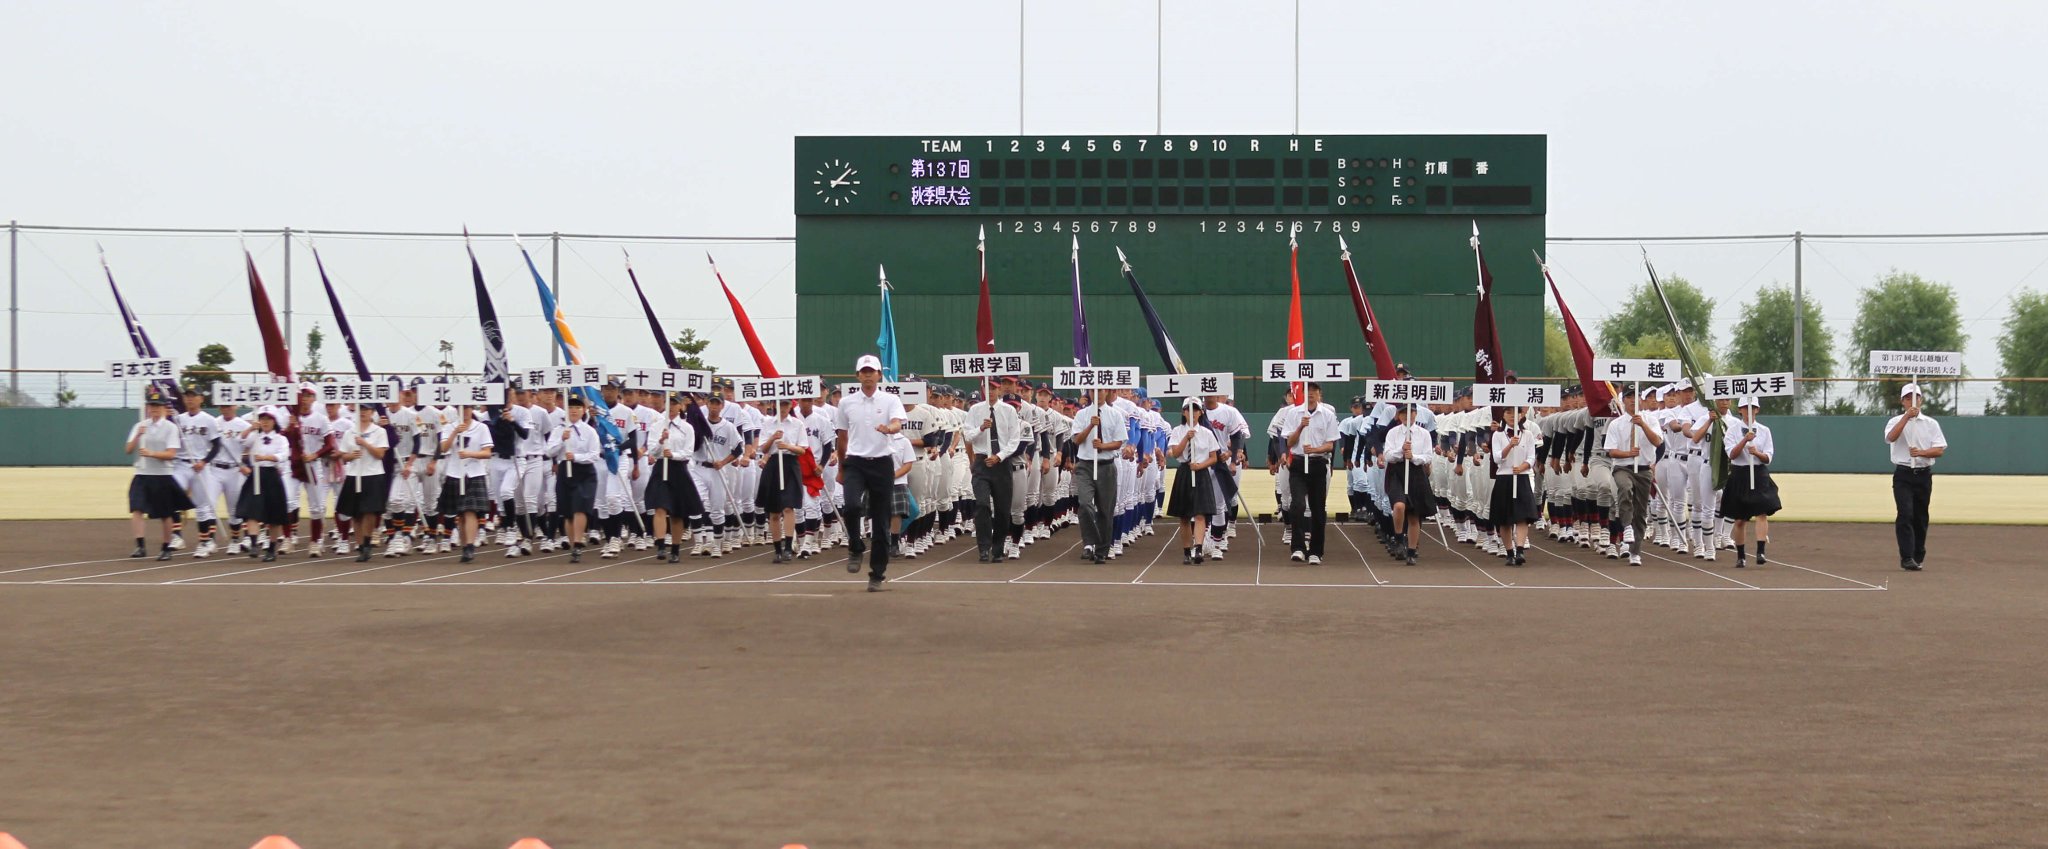 日刊スポーツ新潟 on Twitter "明日17日の日刊スポーツ新潟版は、開幕式が行われた高校野球県大会から注目